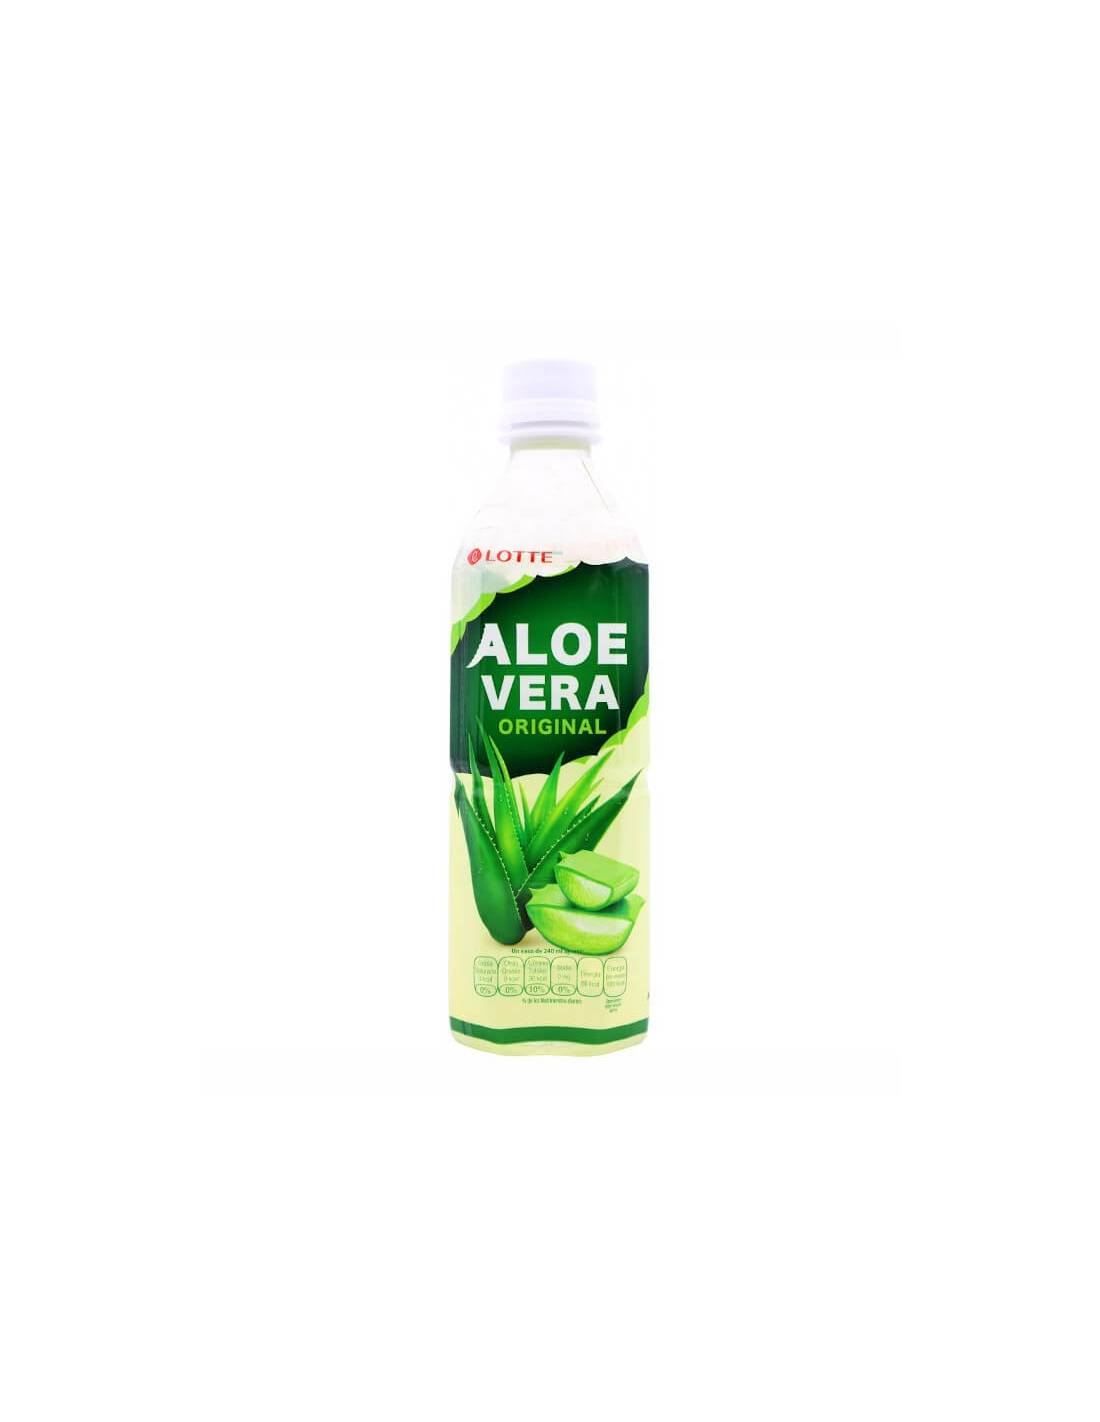 Florecer Estado pakistaní Bebida de Aloe Vera Original 500ml Lotte - Distribución Mayorista